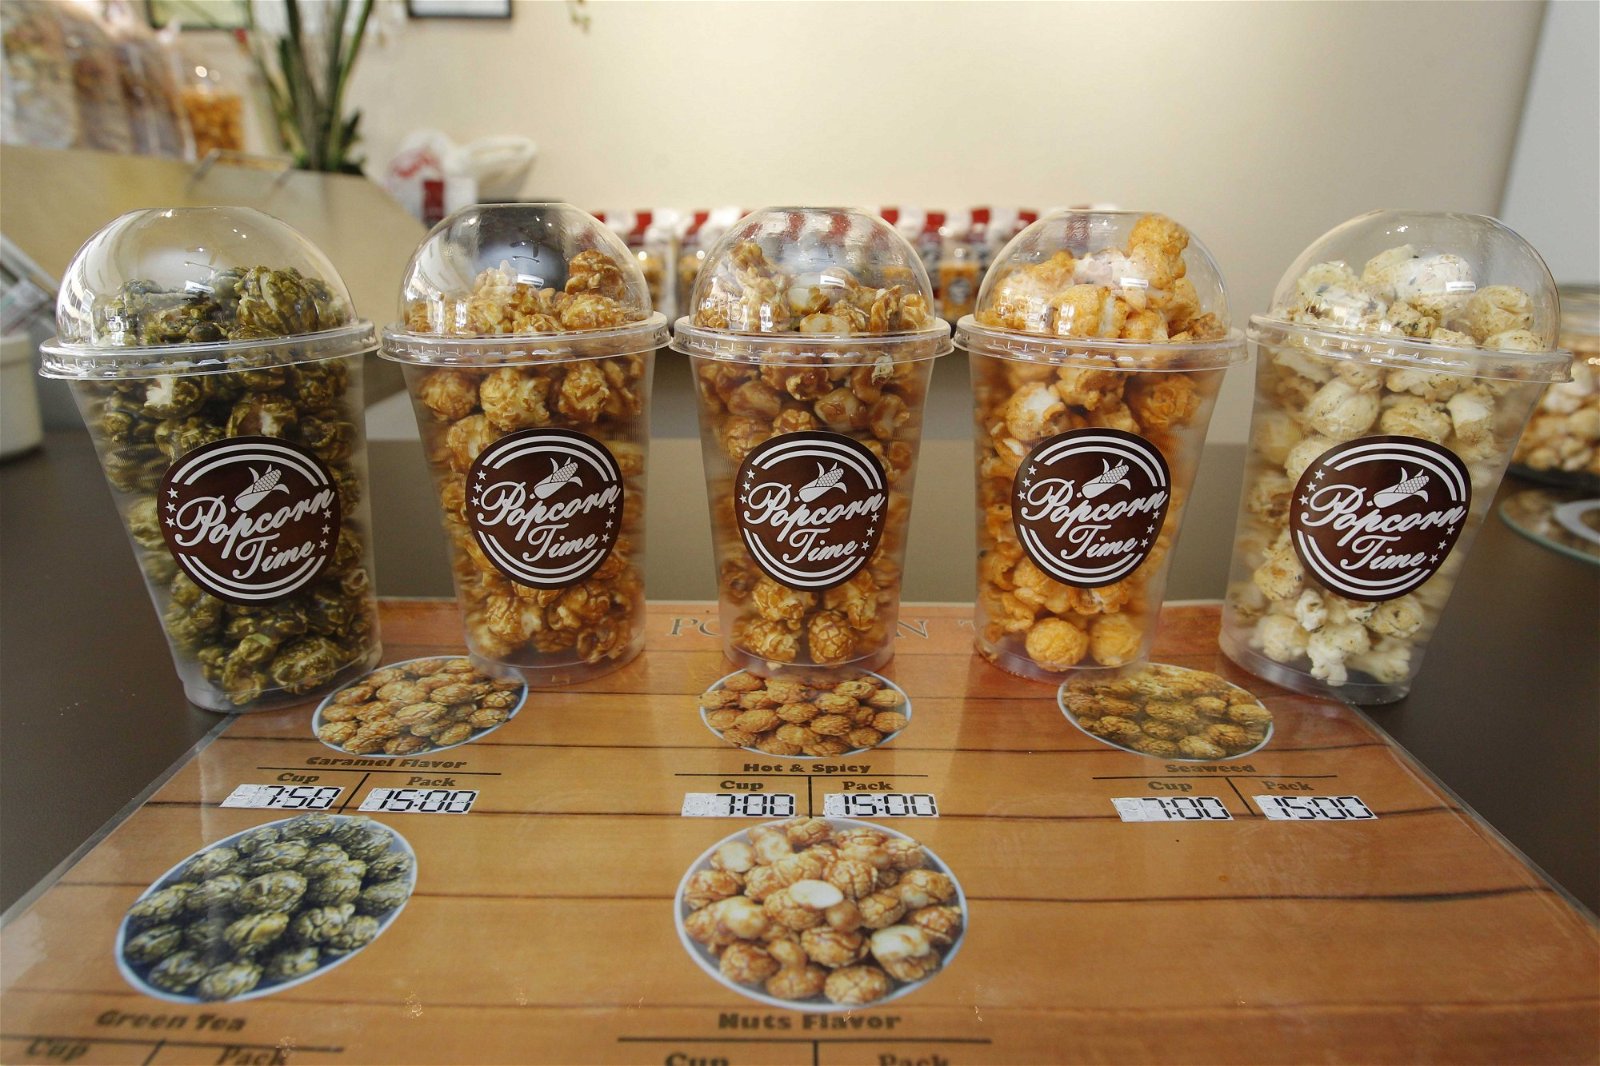 “爆米花专卖店PopcornTime”目前共有5种口味的爆米花供顾客选择。